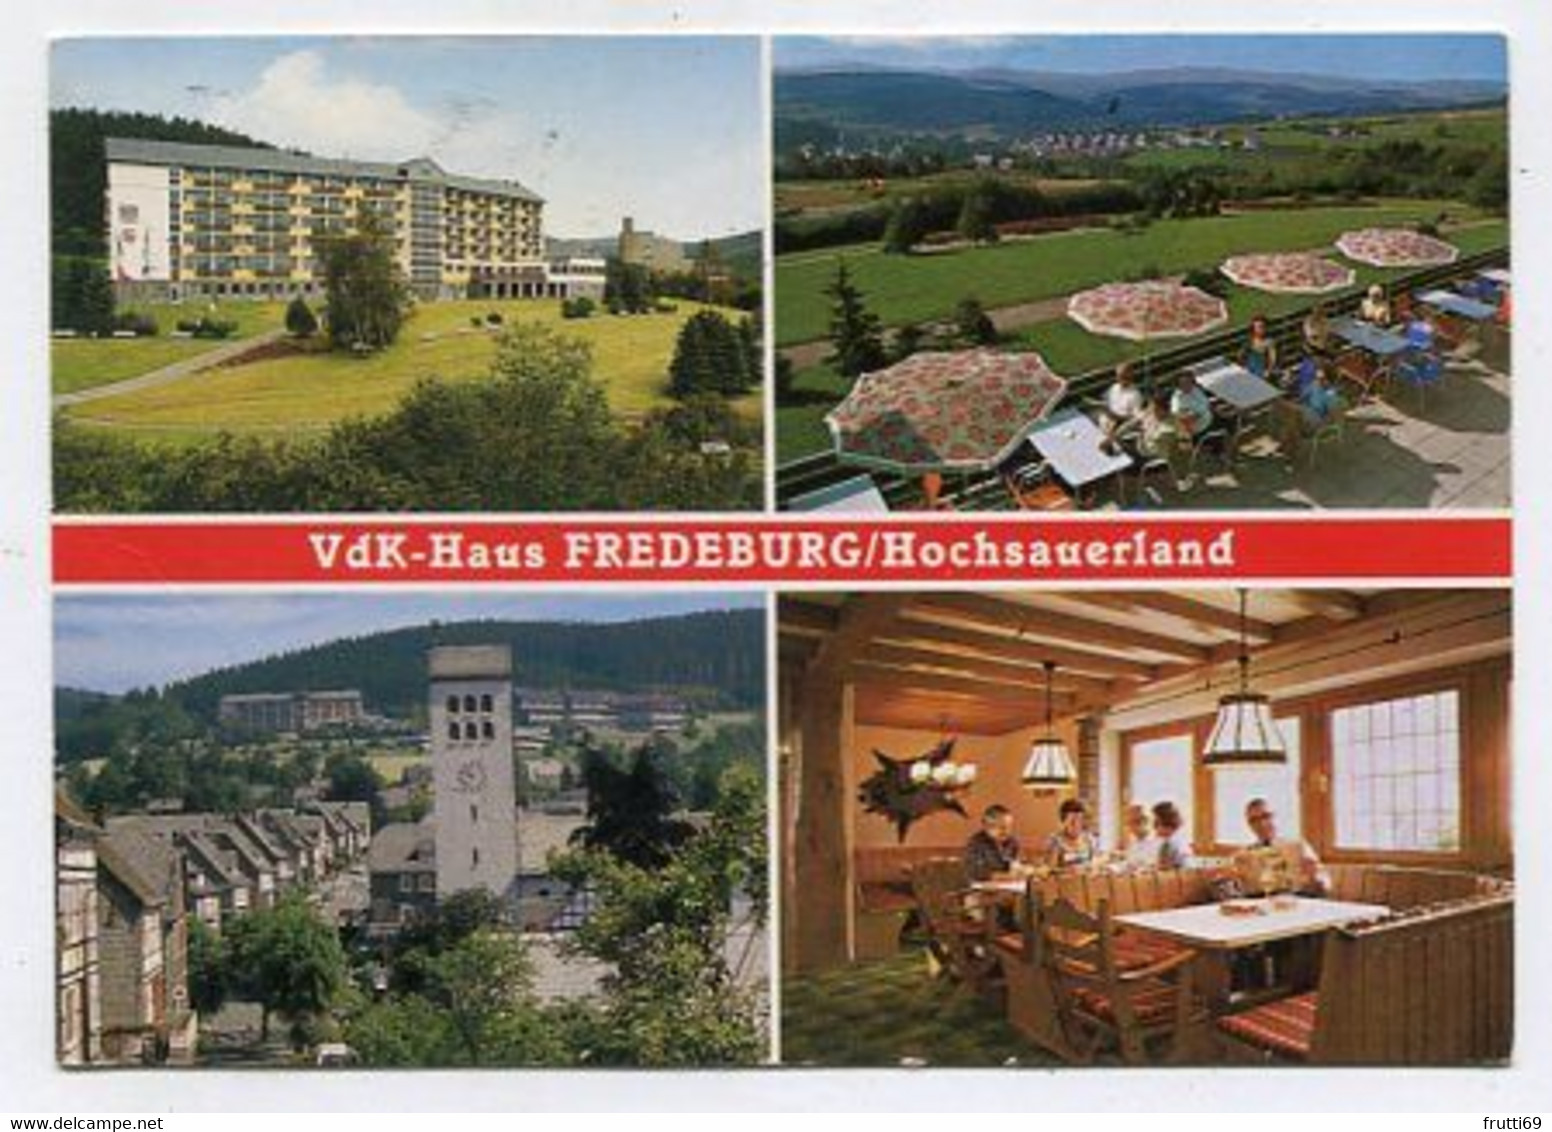 AK 056548 GERMANY - Schmallenberg - Fredeburg / Hochsauerland - VdK-Haus - Schmallenberg